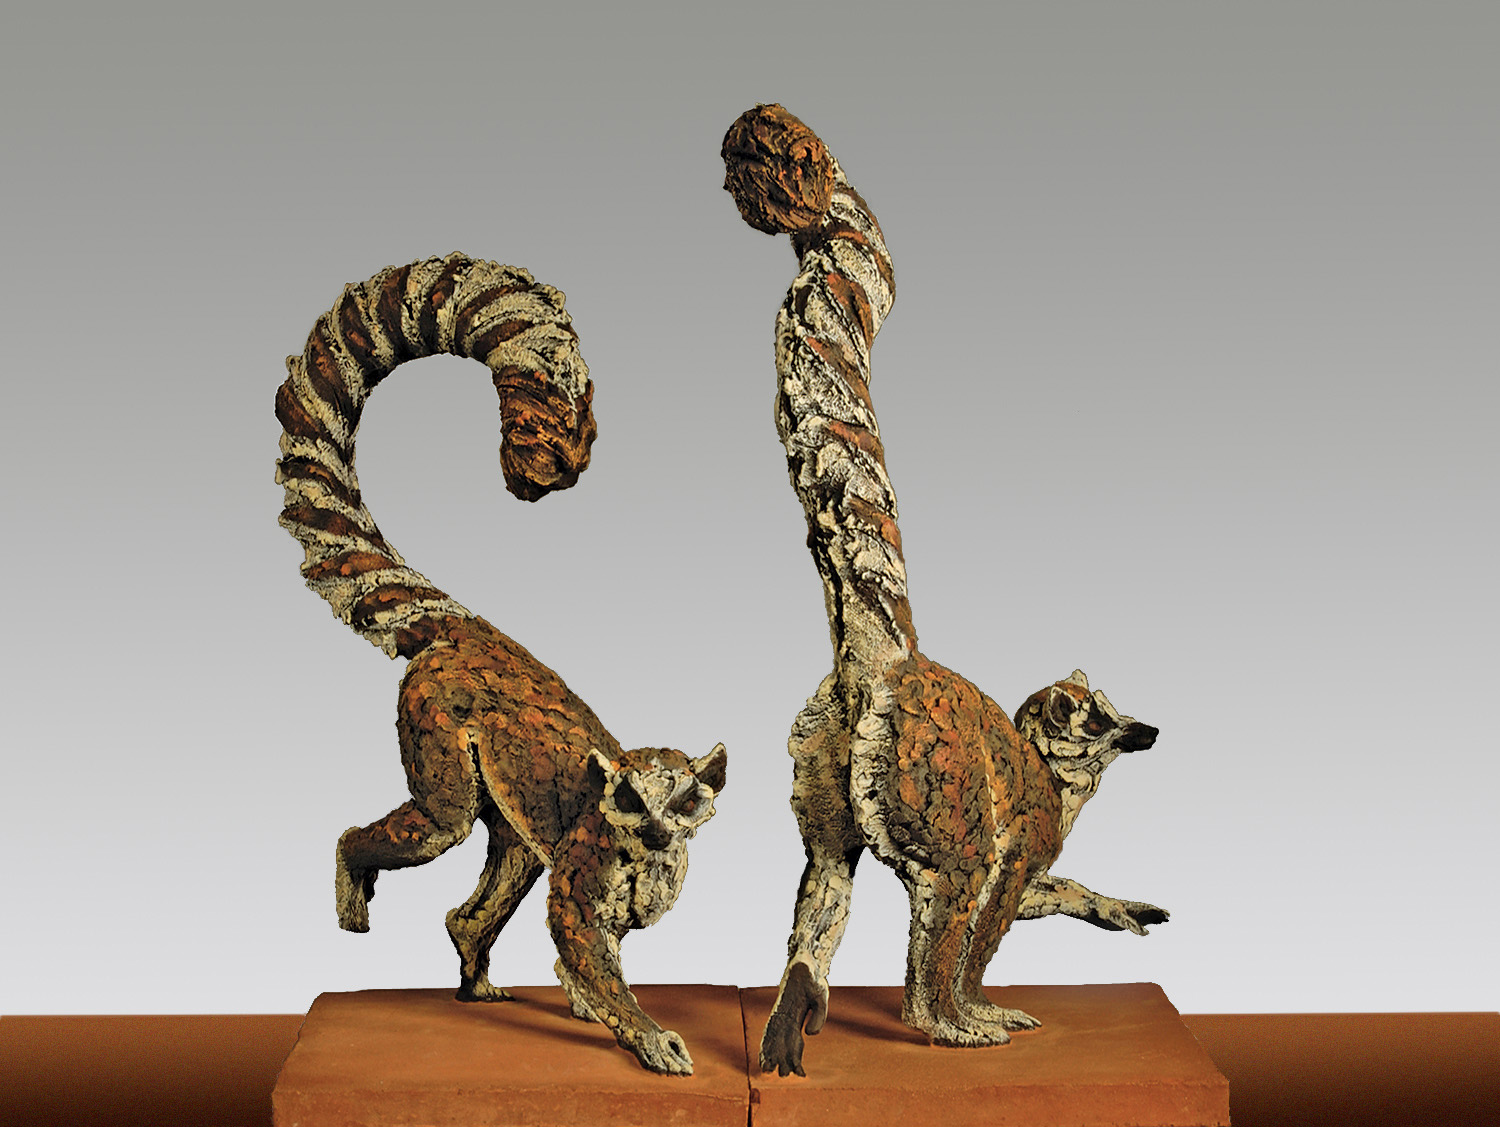  Ring Tailed Lemurs &nbsp; ©  66 cm high x 38 cm wide  Unique 